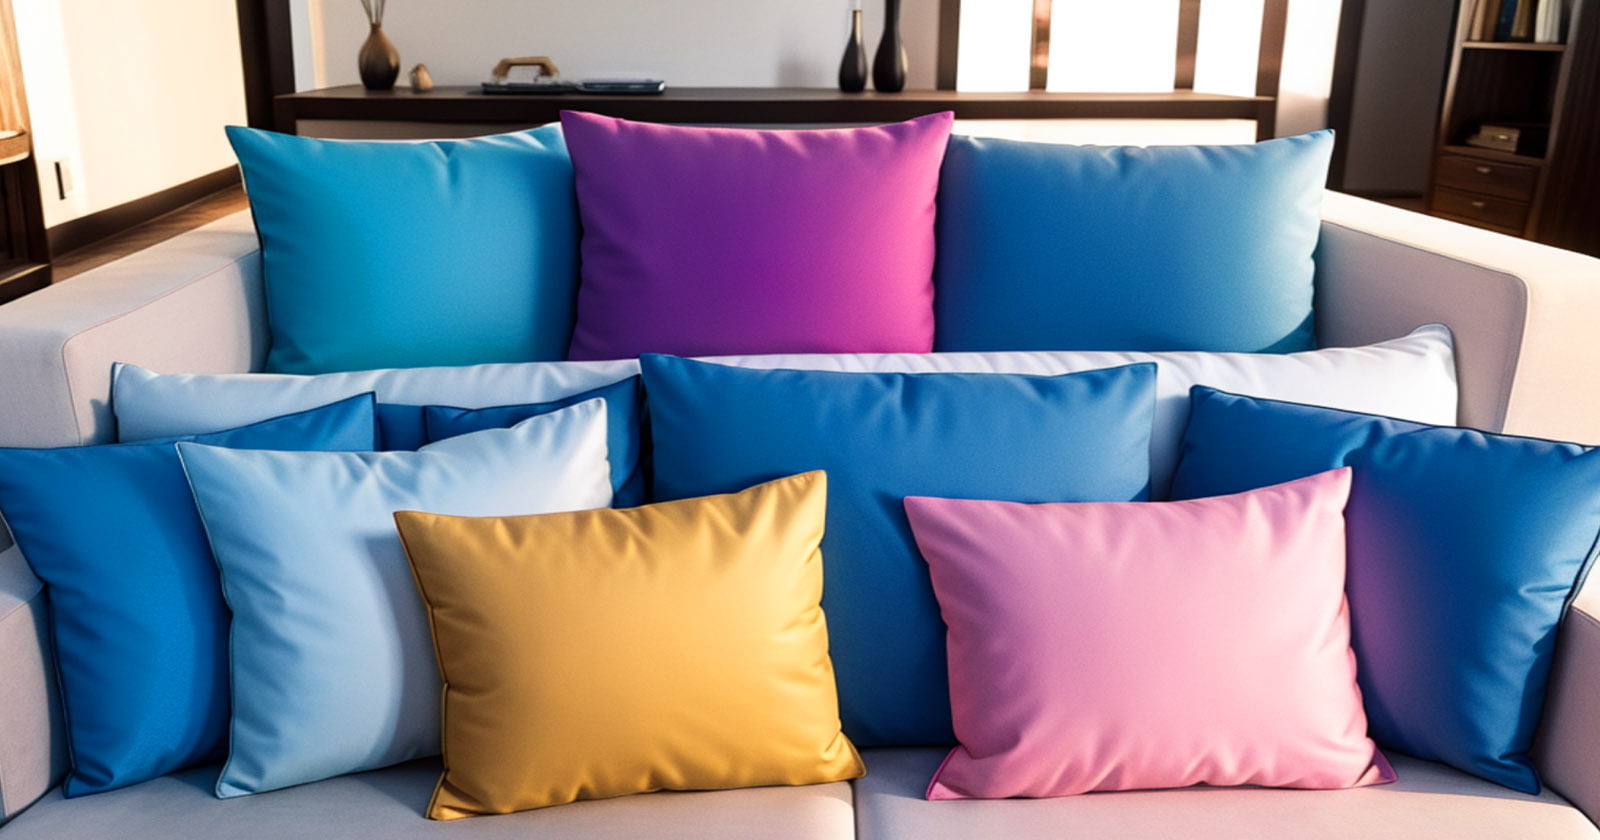 Transforme retalhos de tecido em almofadas charmosas para arrasar na decoração